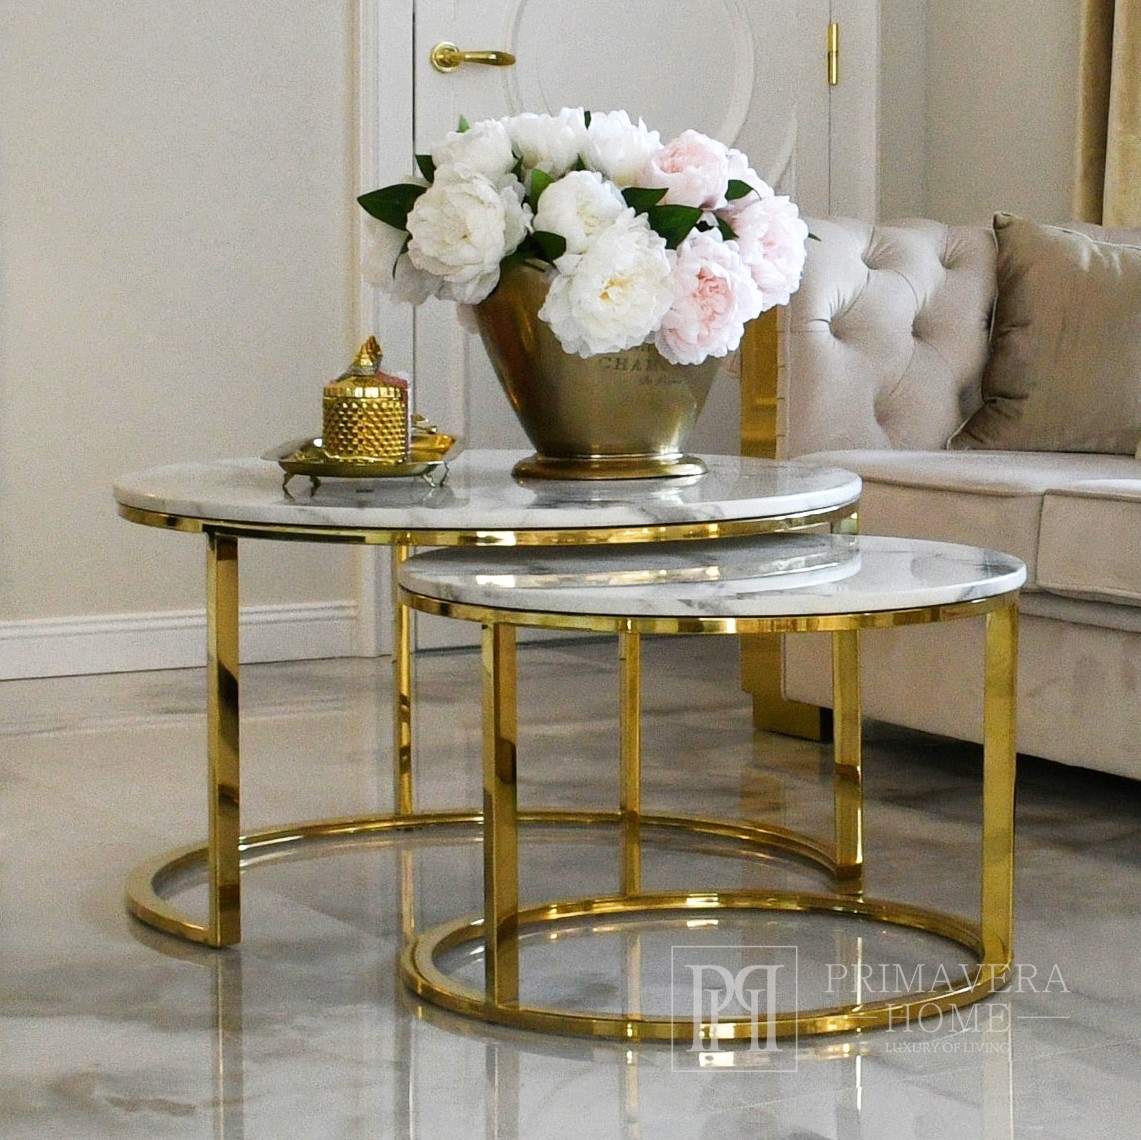 Gold Glamour Home - modernes Steintischplatte Primavera MARCO GOLD mit weißer Couchtisch,